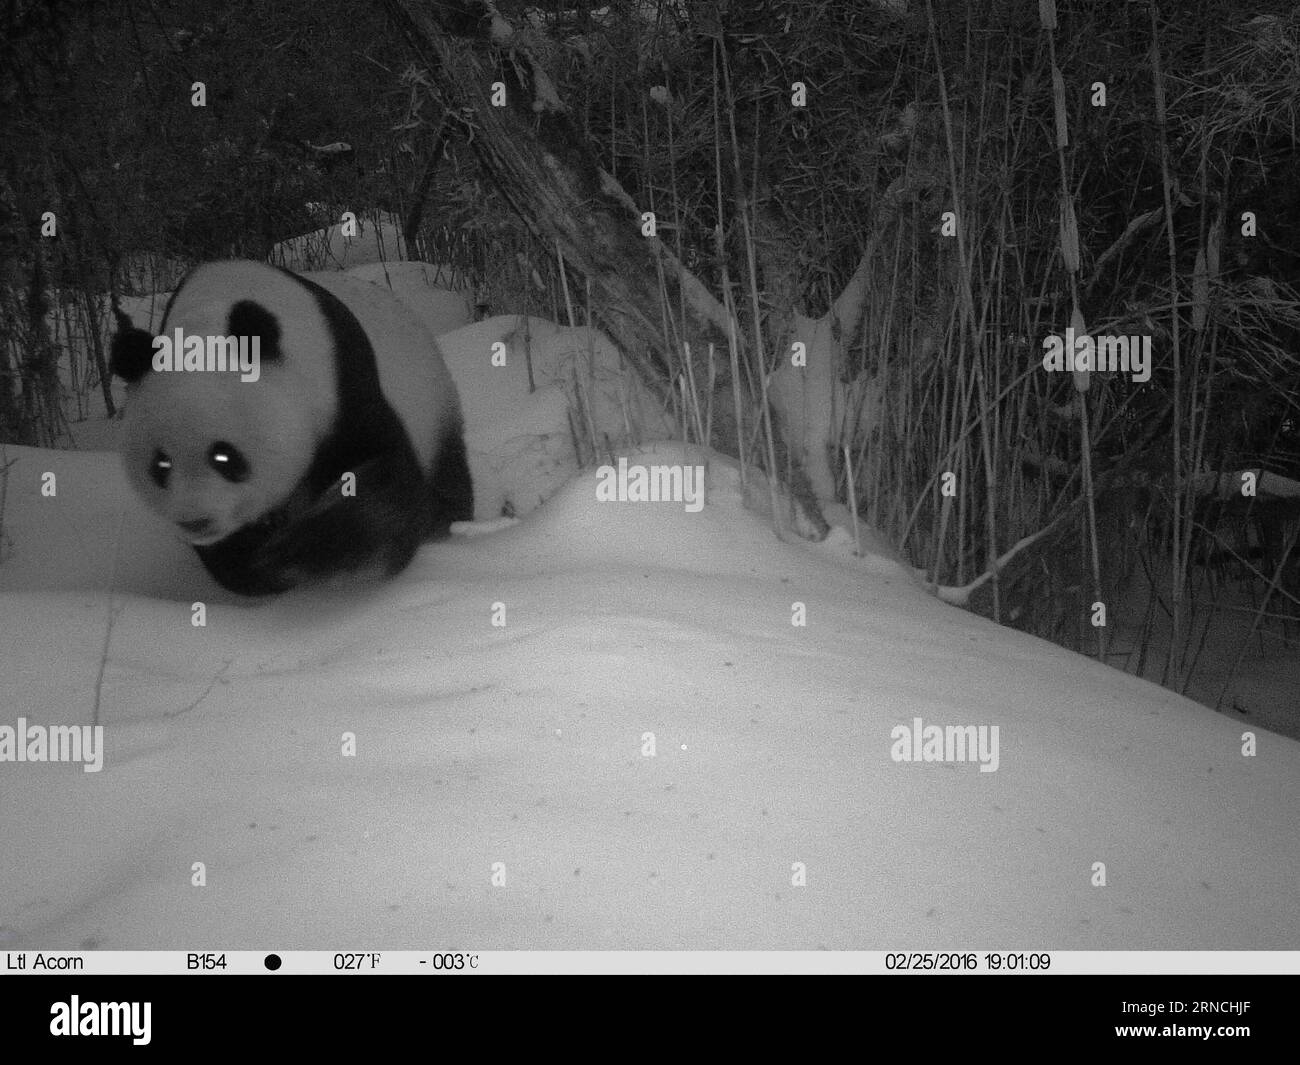 (160413) -- LONGNAN, 13. April 2016 () -- Foto aufgenommen mit einer Infrarotkamera zeigt einen wilden Riesenpanda in einem schneebedeckten Wald in Tielou Township of Longnan City, nordwestchinesische Provinz Gansu, 25. Februar 2016. Über 160 Infrarotkameras wurden von den Forstbehörden aufgestellt, um die wilden Tiere und Pflanzen im nationalen Naturschutzgebiet des Baishui River zu überwachen. mit 110 Riesen-Pandas, die leben in.() (ry) CHINA-GANSU-WILDER RIESE PANDA (CN) Xinhua PUBLICATIONxNOTxINxCHN 160413 Longnan 13. April 2016 Foto aufgenommen mit der Infrarot-Kamera zeigt einen wilden Riesen-Panda in einem schneebedeckten Wald in der Gemeinde Tielou Stockfoto